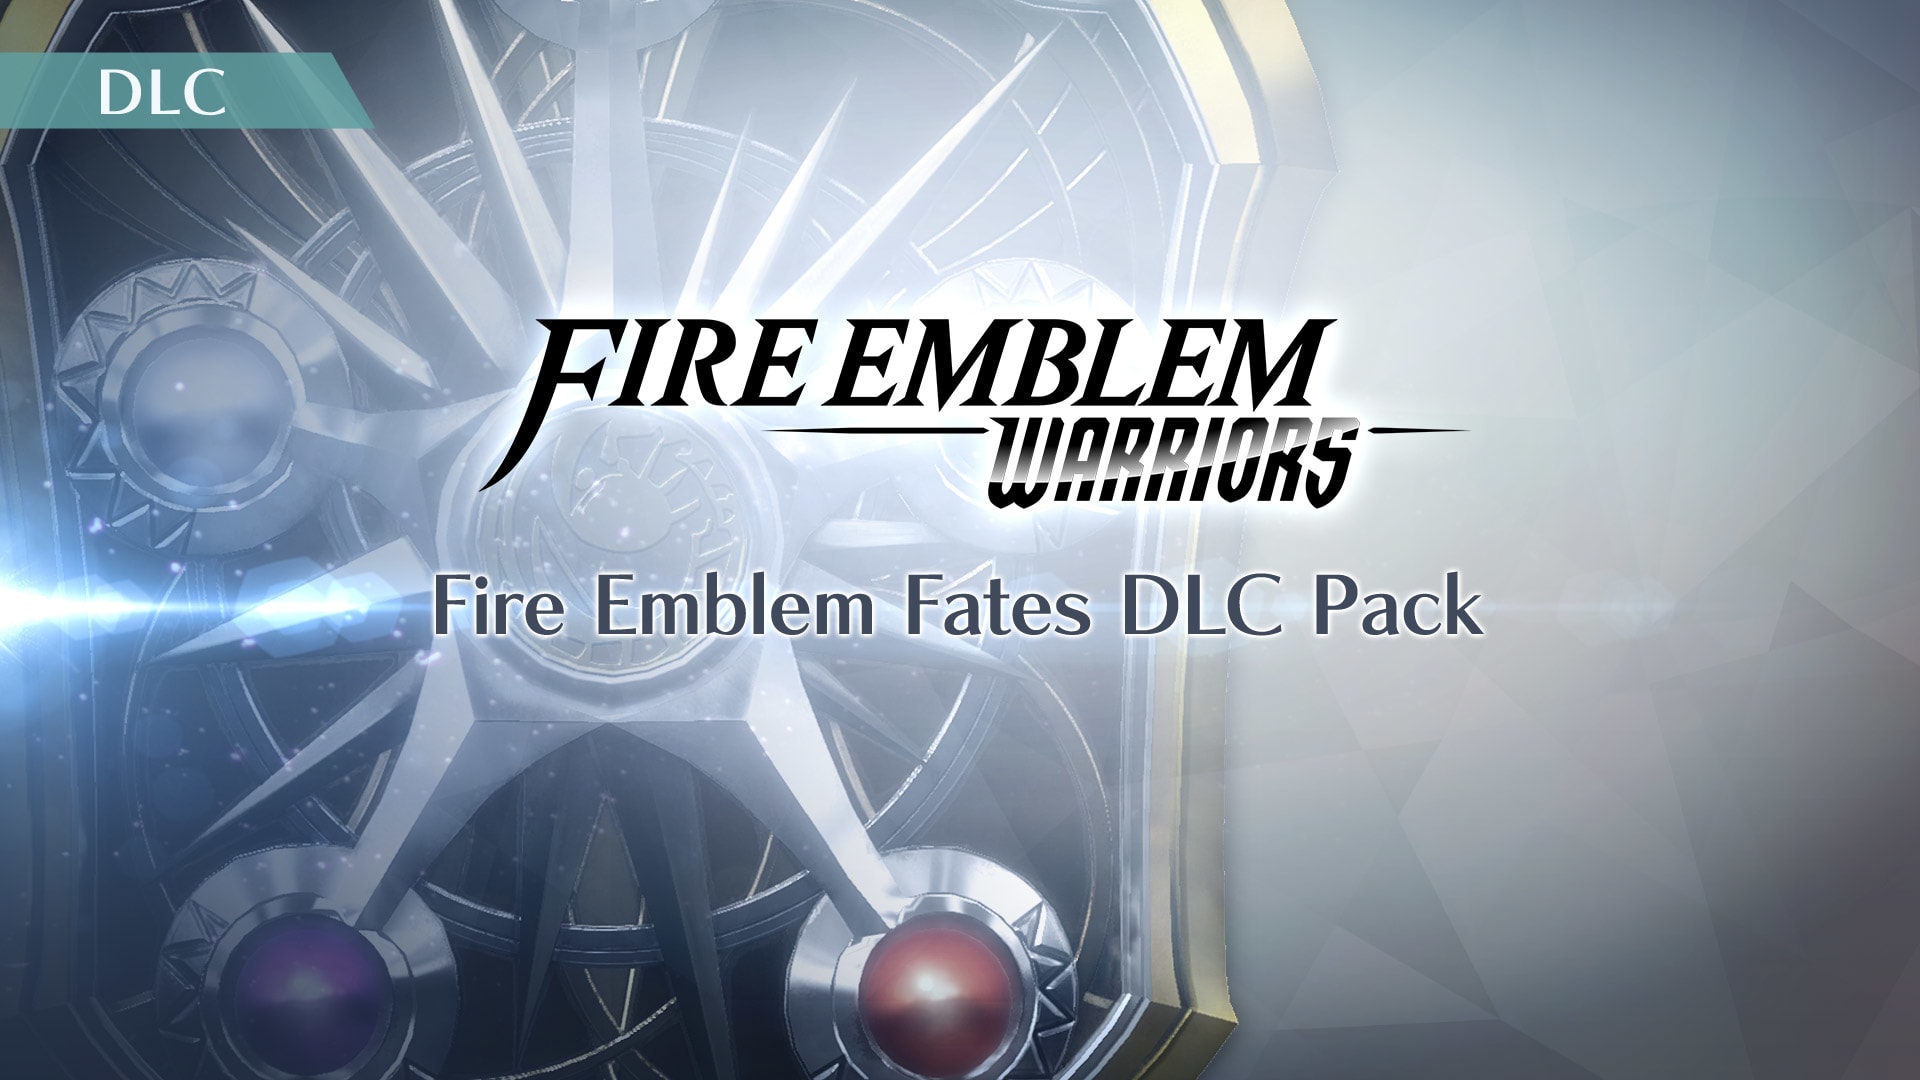 Fire Emblem Fates DLC Pack